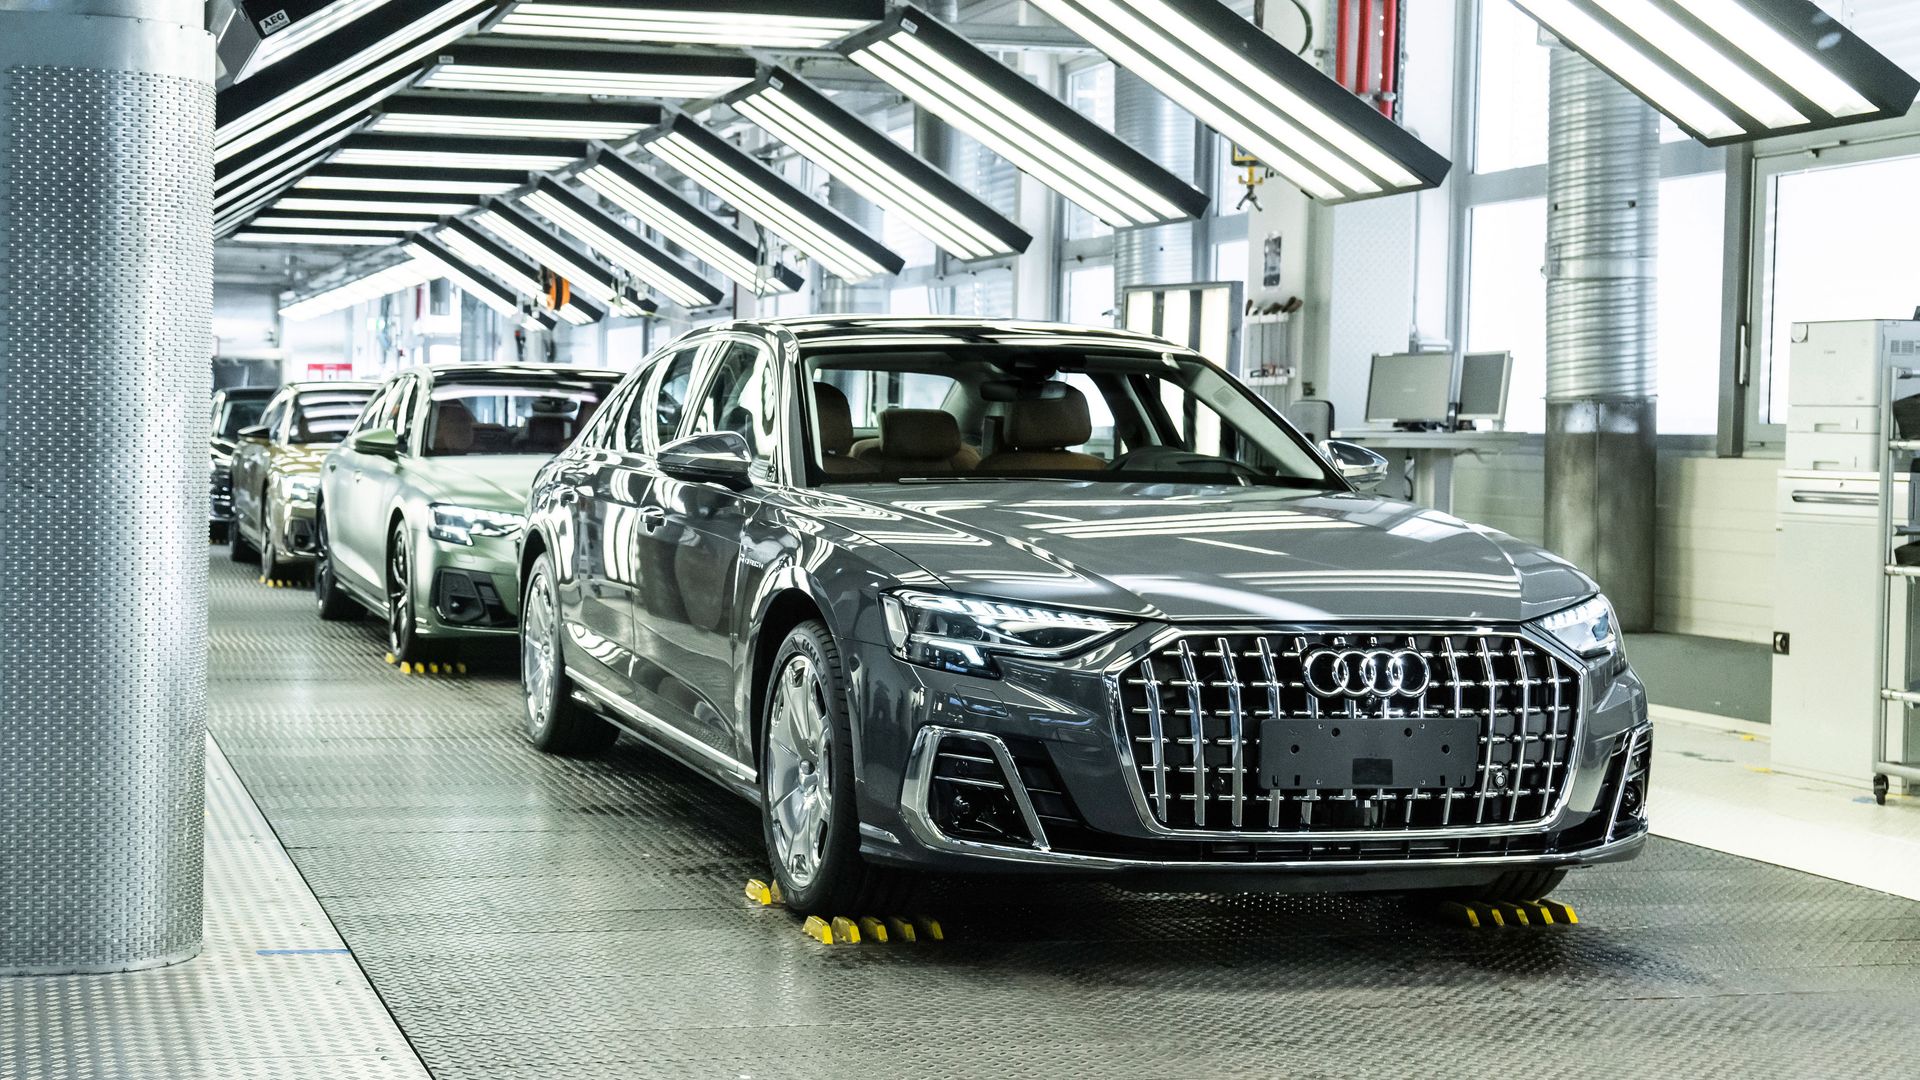 Audi Deutschland - Action pur im Audi Shop – Unterstütze die Audi